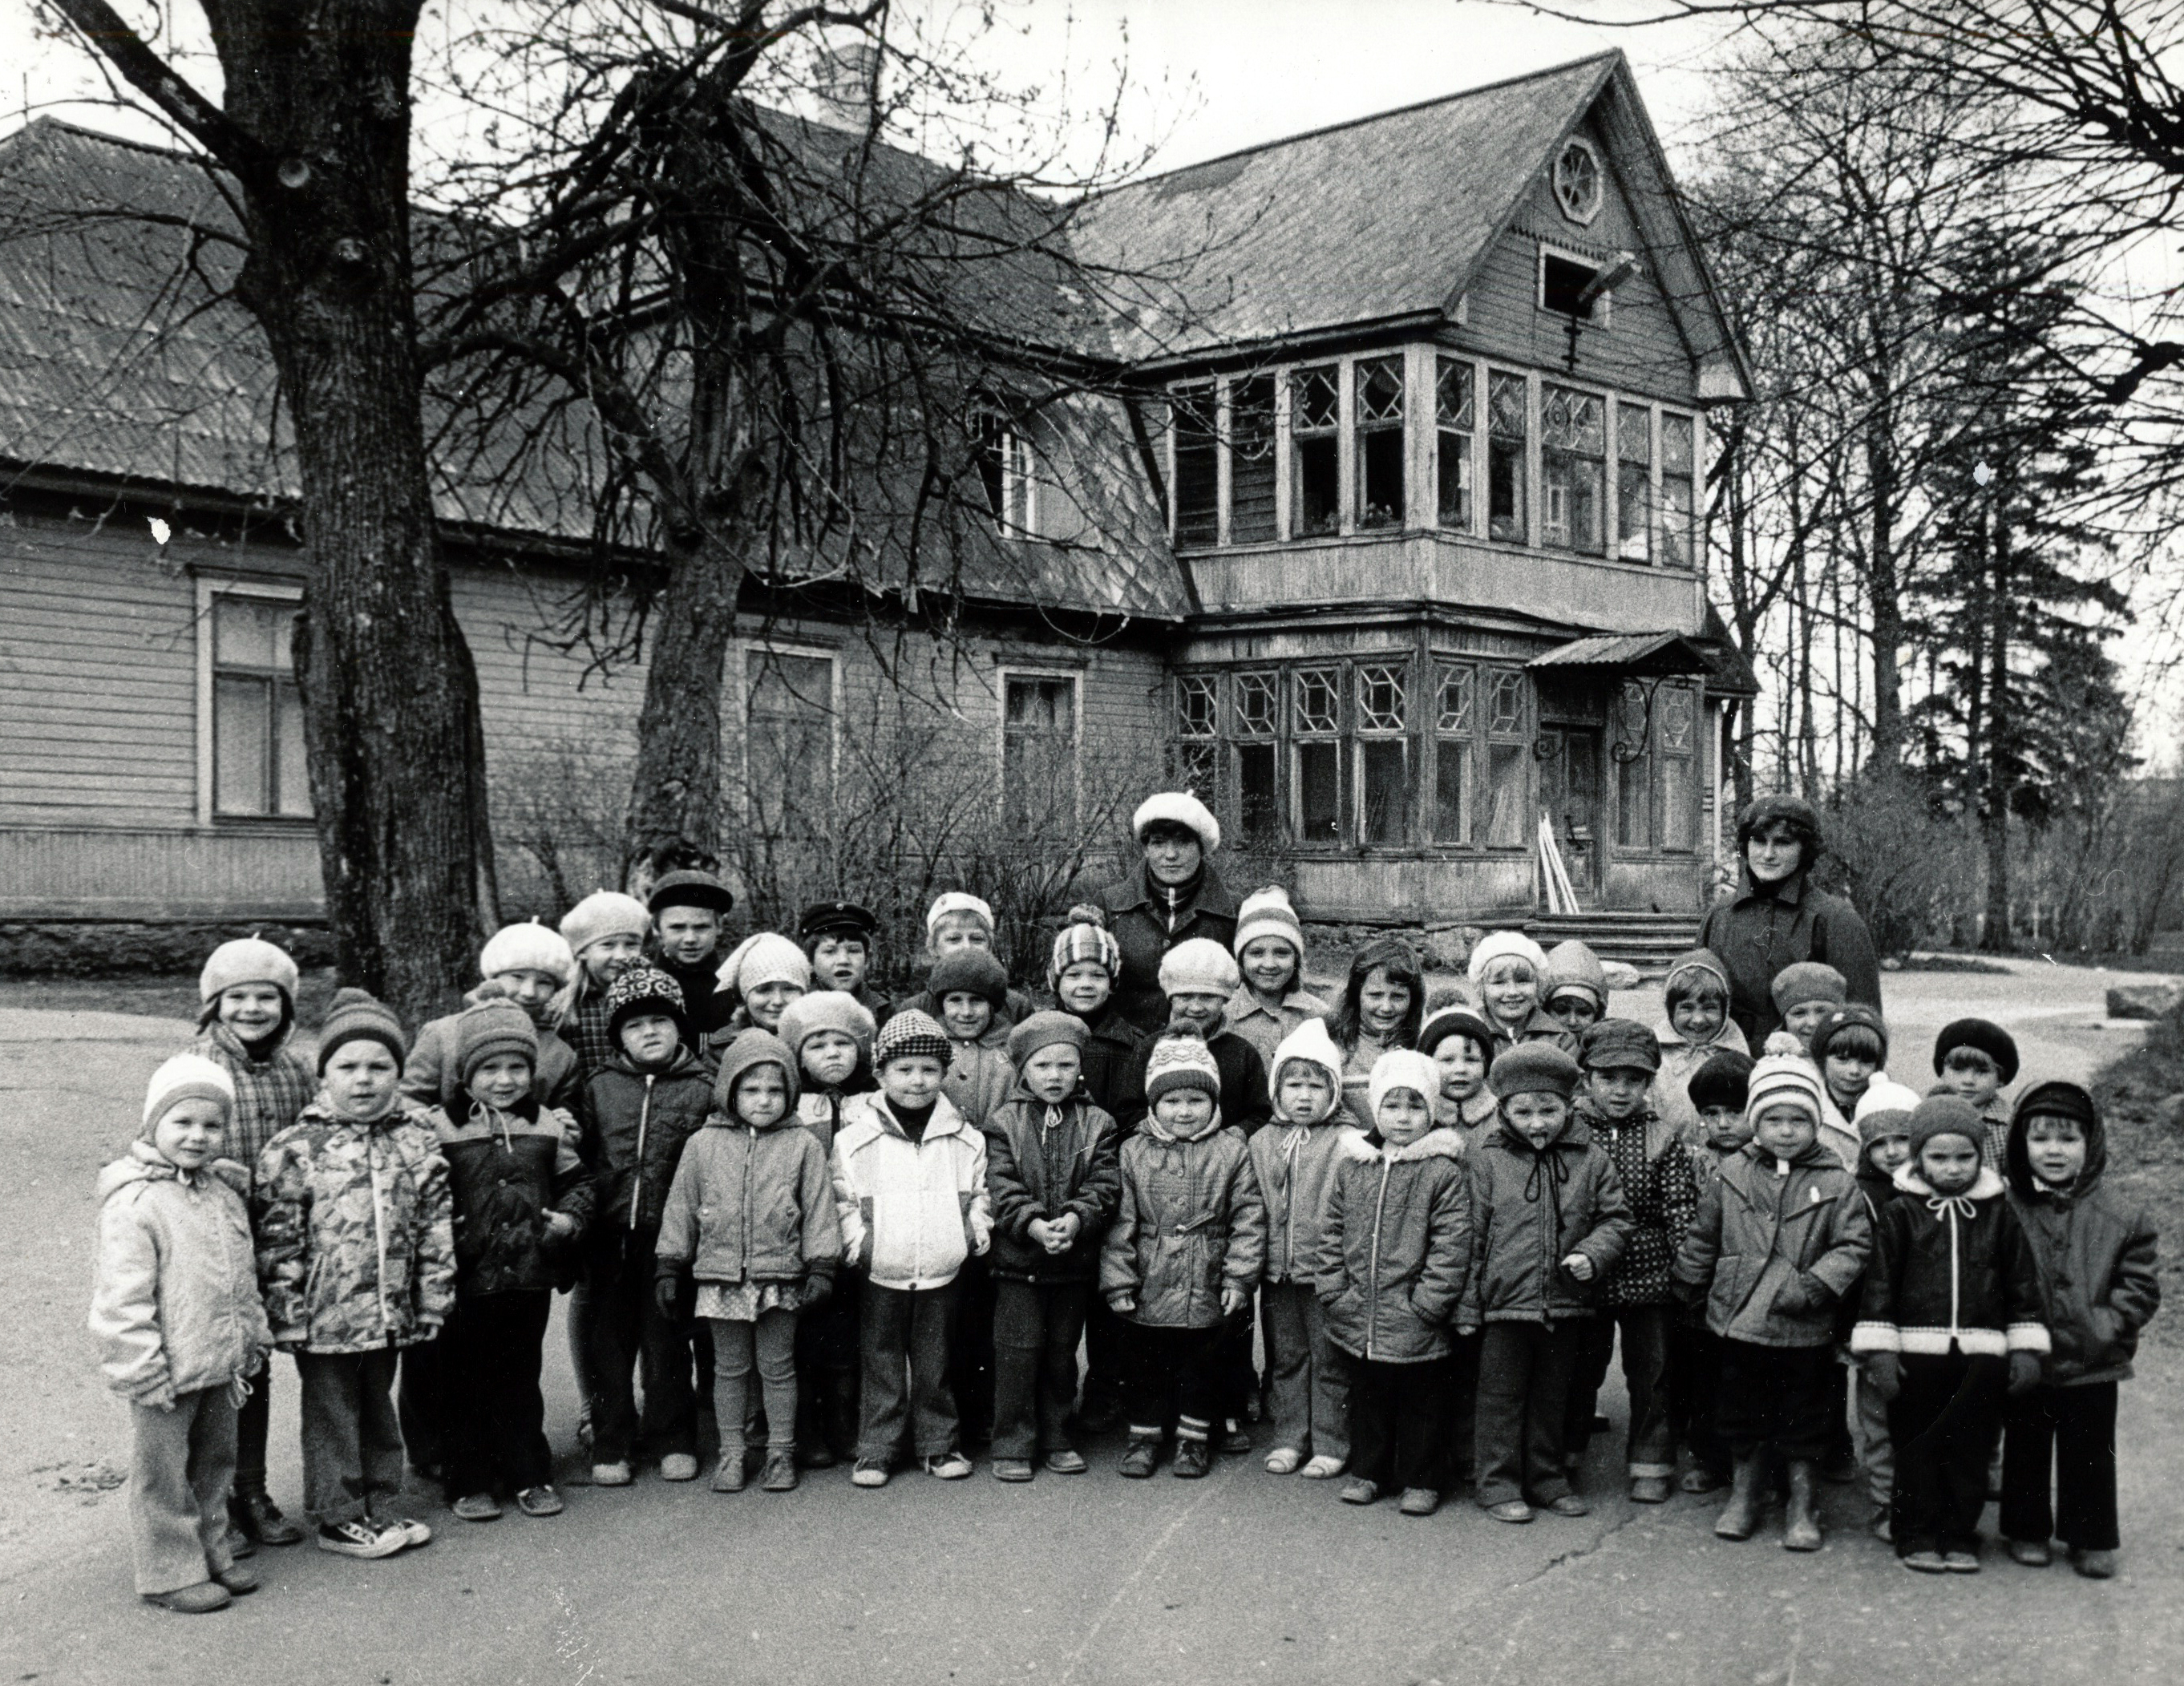 Taebla kindergarten groups in 1983